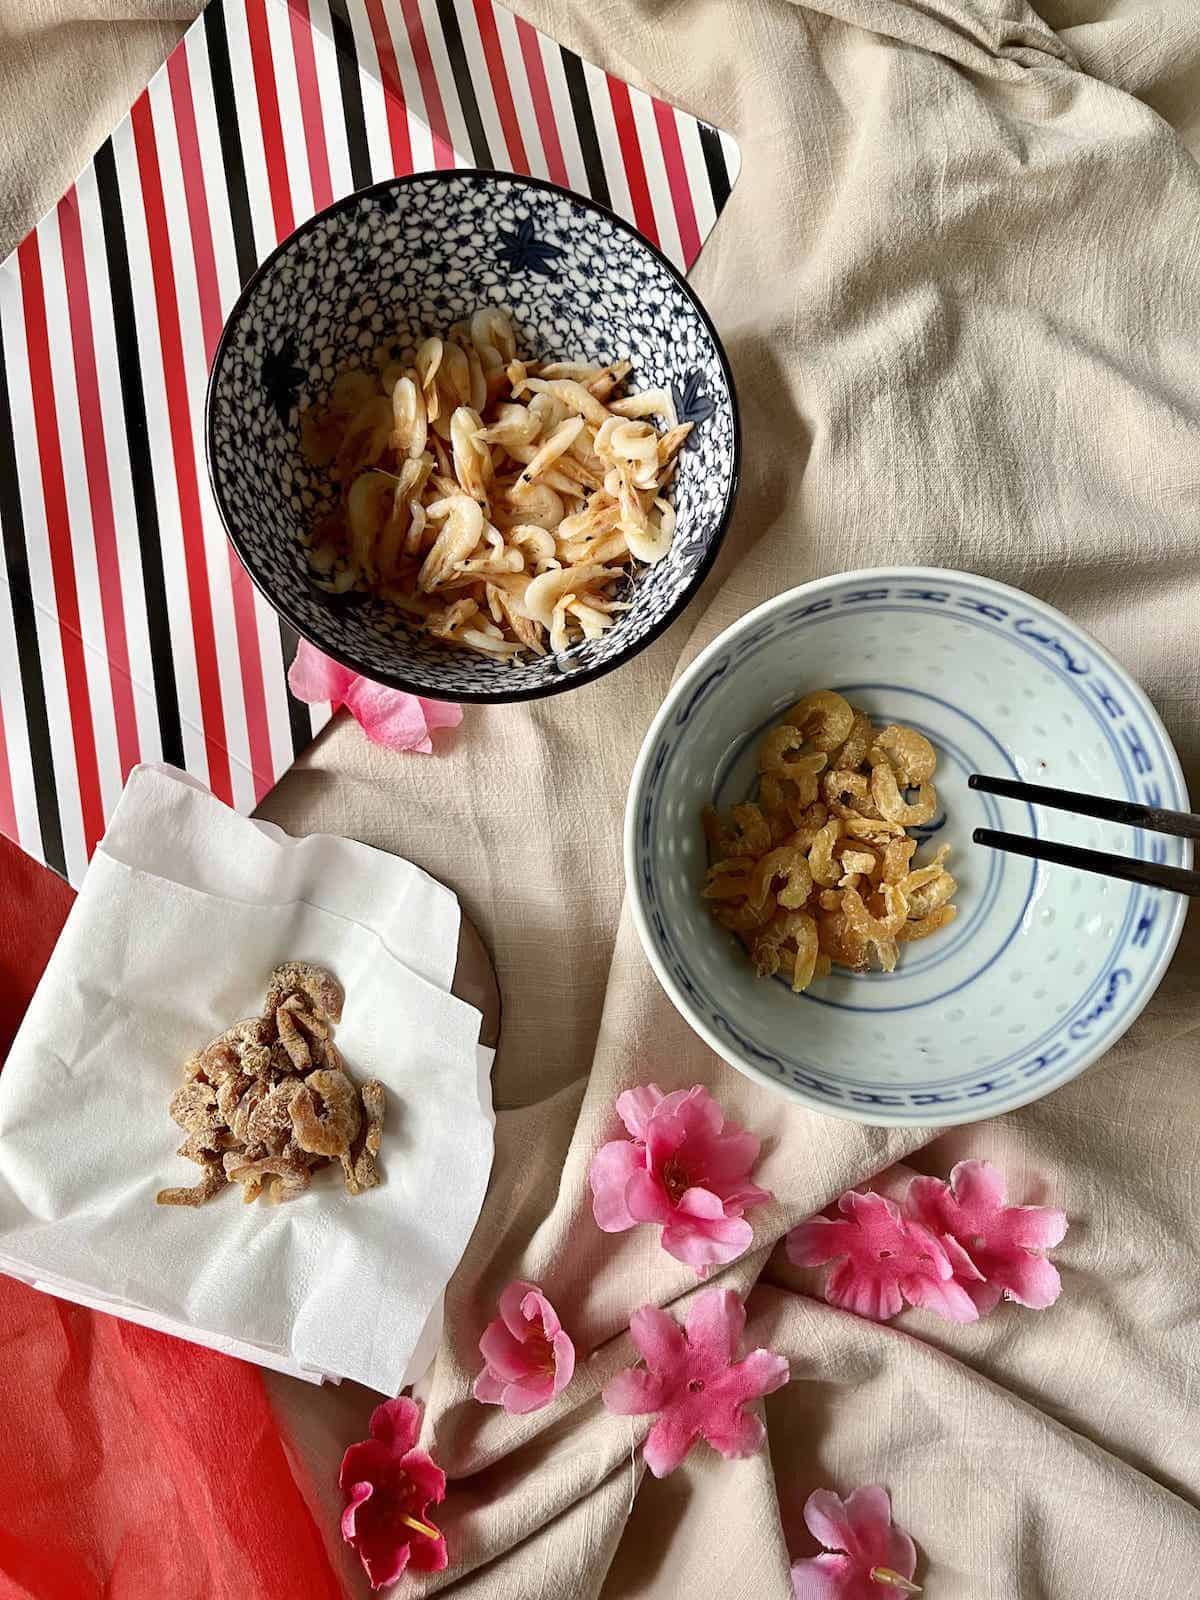 A bowl of dried shrimp next to a bowl of spoilt dried shrimp and a bowl of Sakura Ebi.